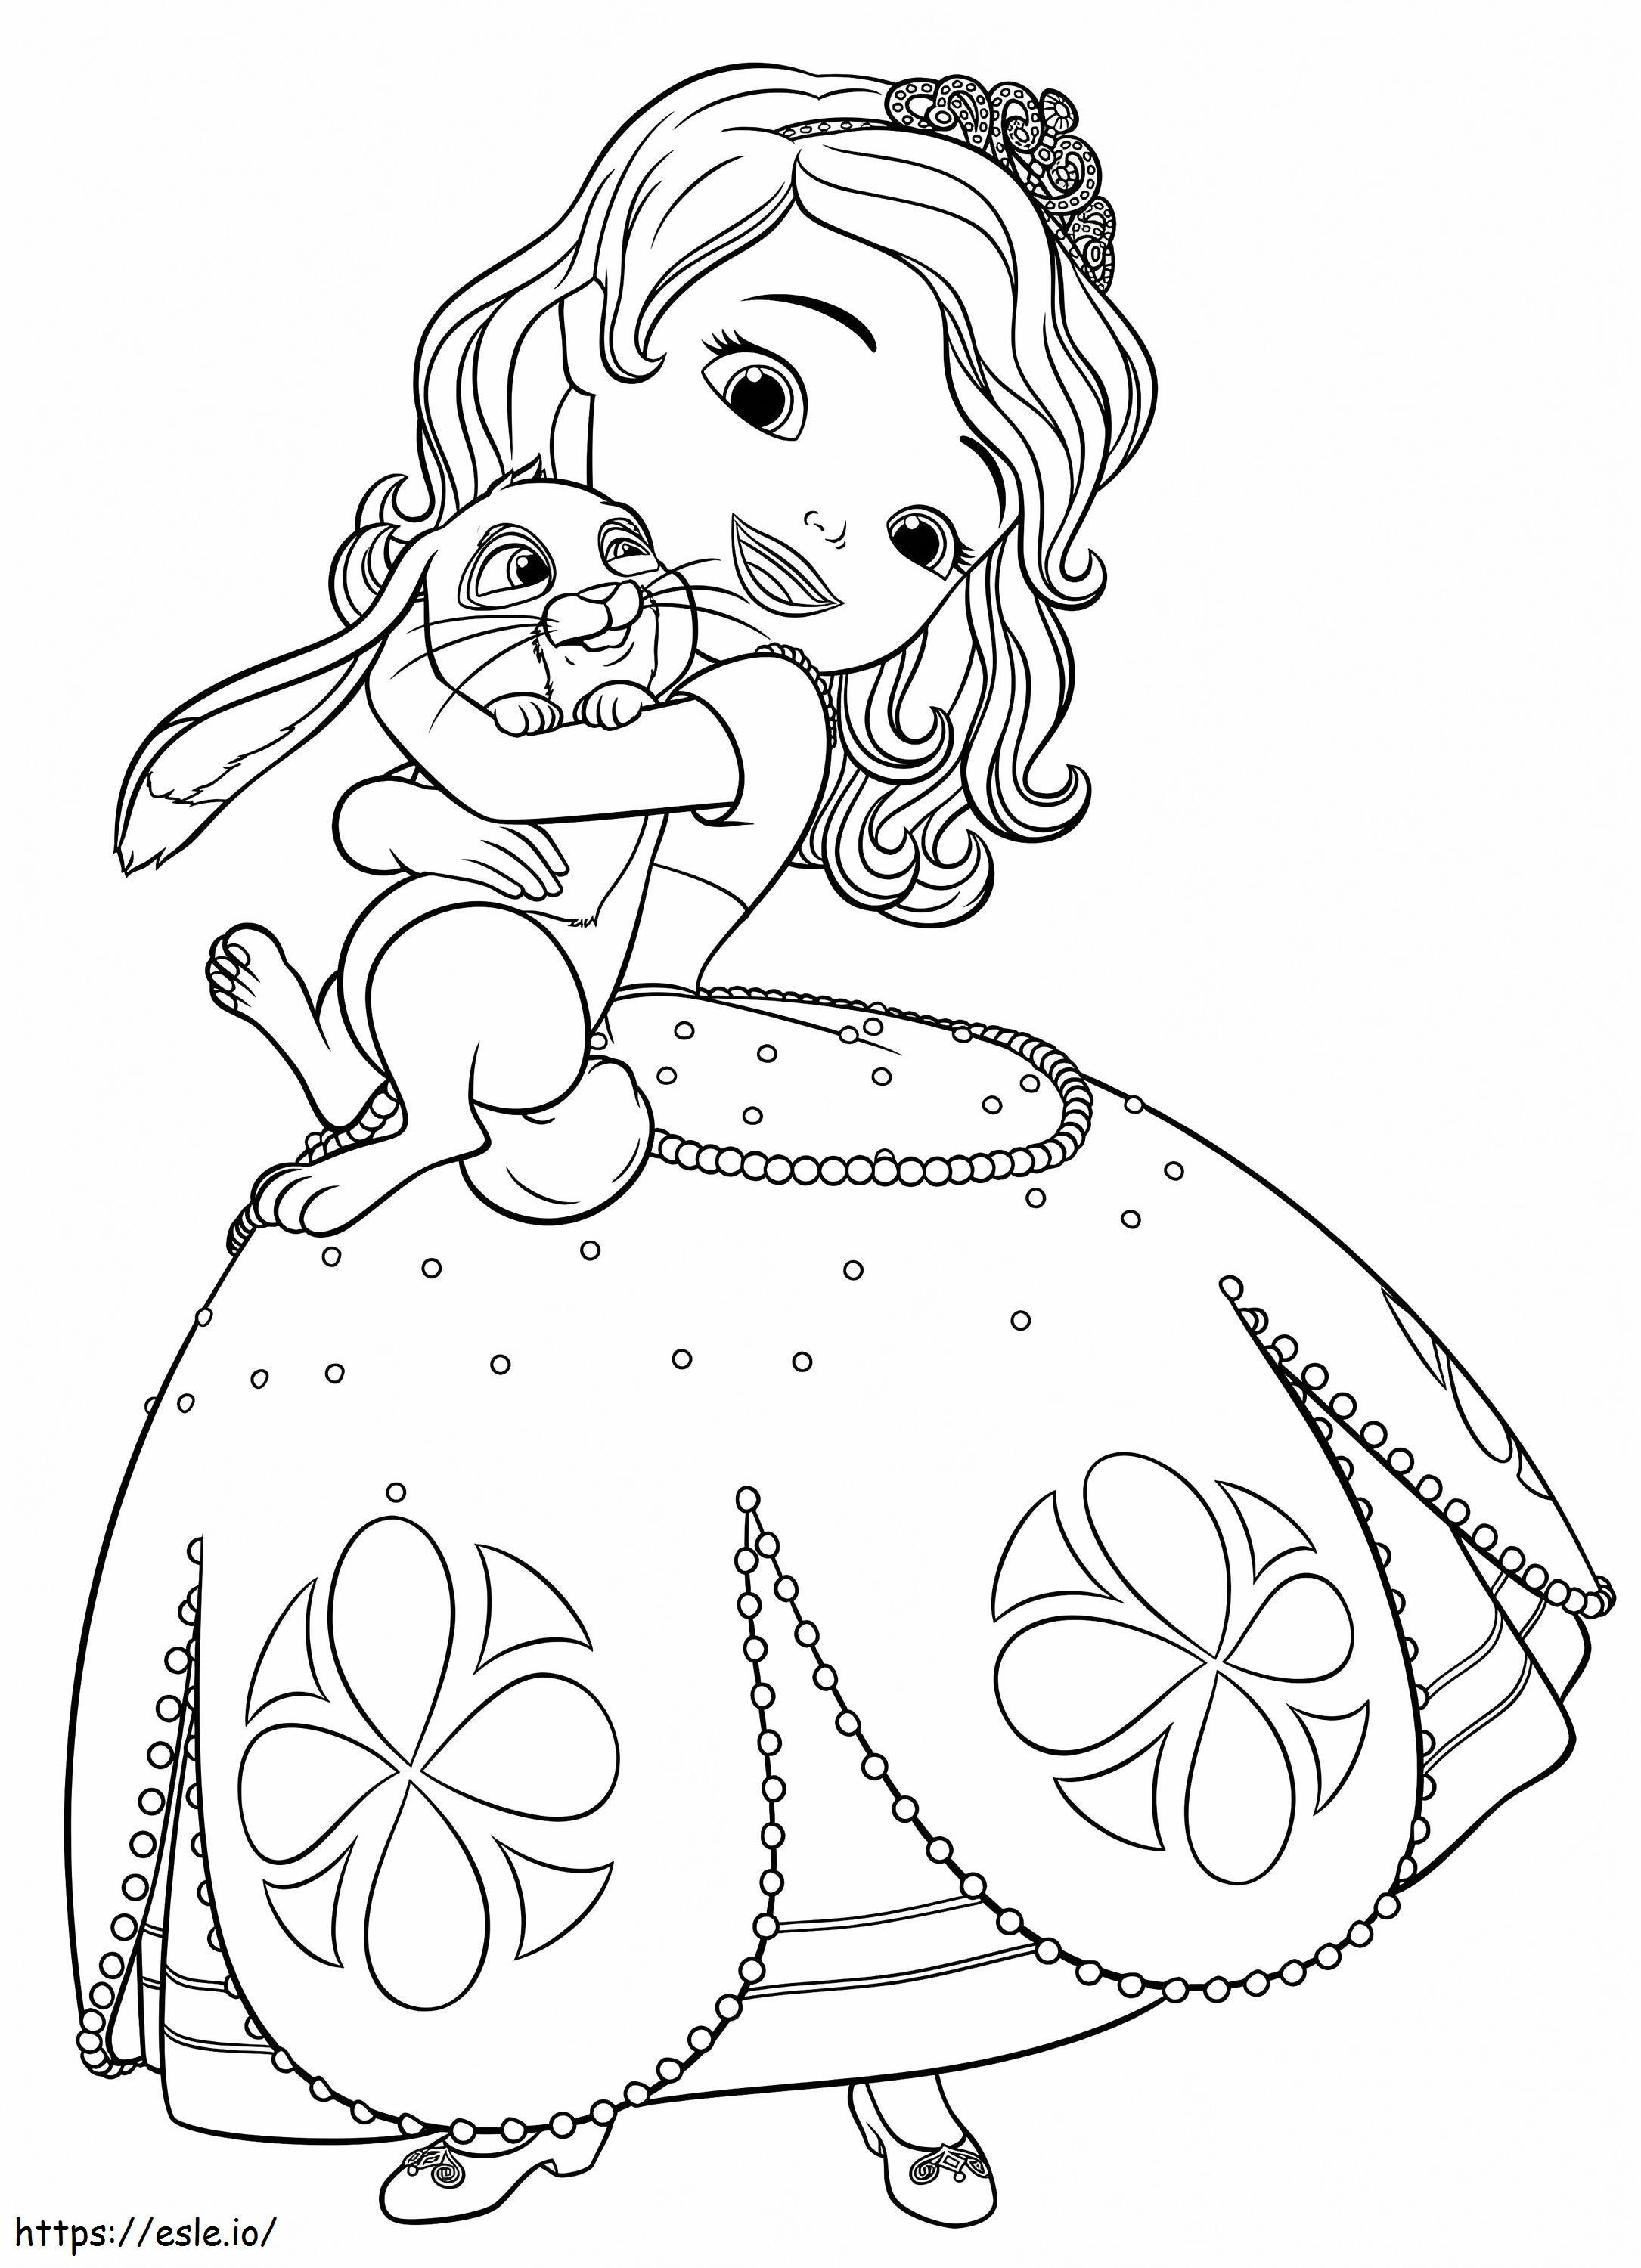 Prinzessin Sofia mit Klee ausmalbilder